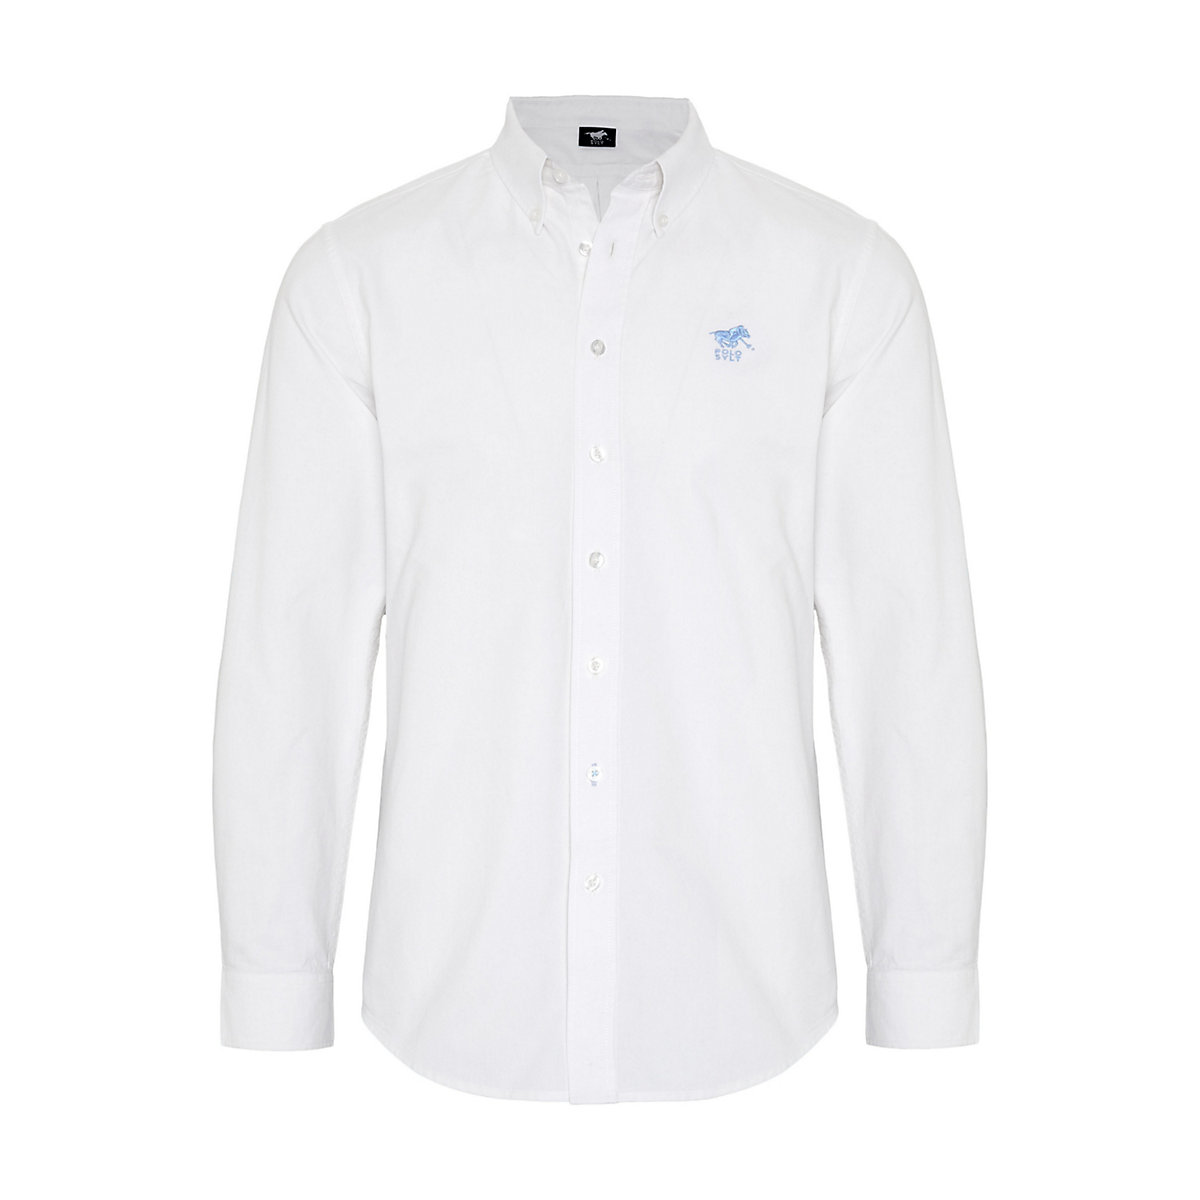 POLO SYLT Hemd aus hochwertiger Qualität Langarmhemden weiß